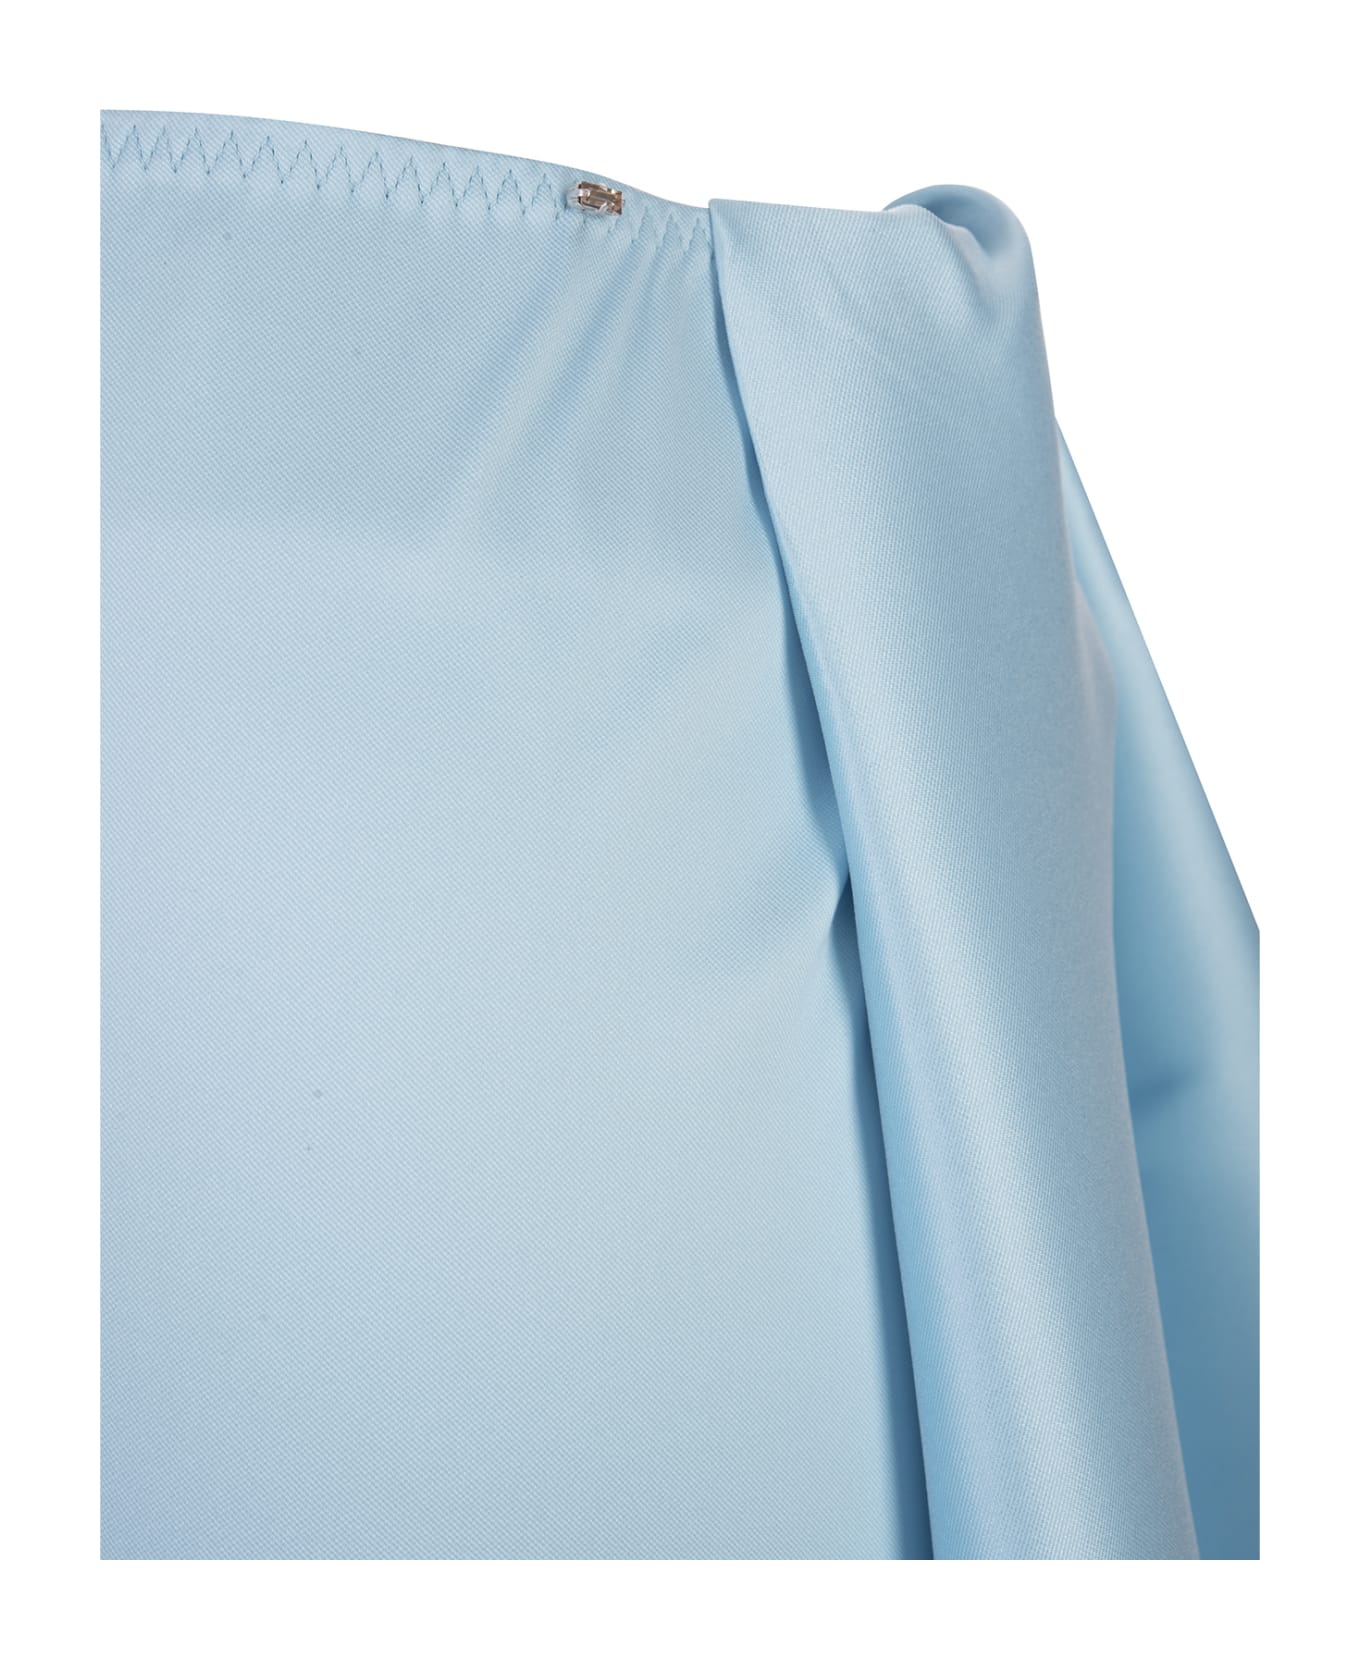 SportMax Light Blue Beira Shorts Skirt - Cielo